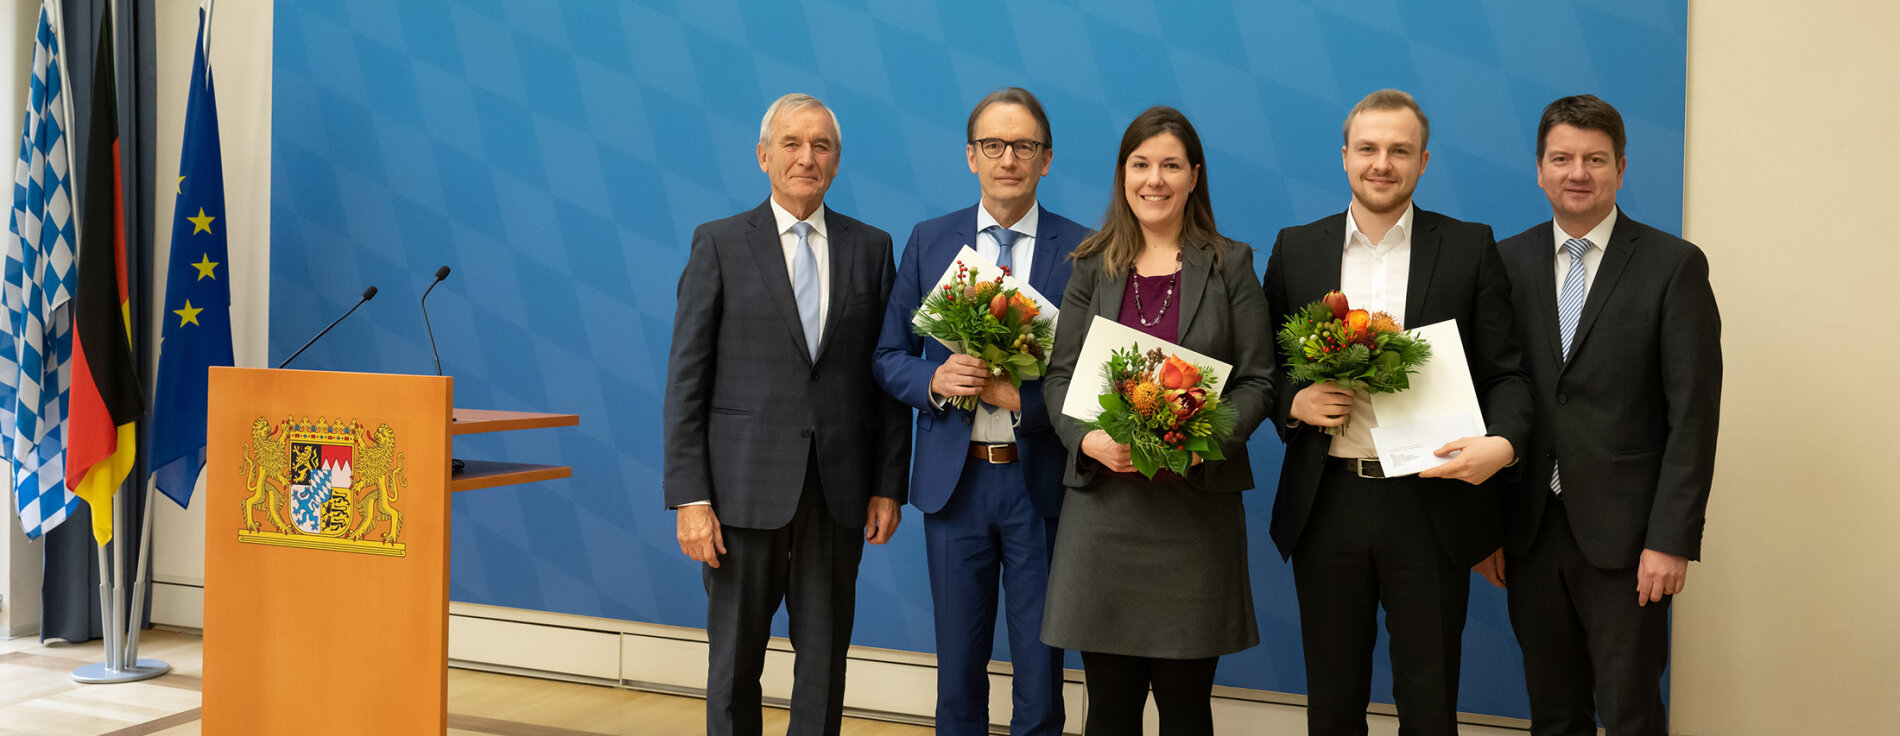 Gruppenfoto mit Preisträgerin und Preisträgern sowie Innenstaatssekretär Kirchner und Joseph Ströbl